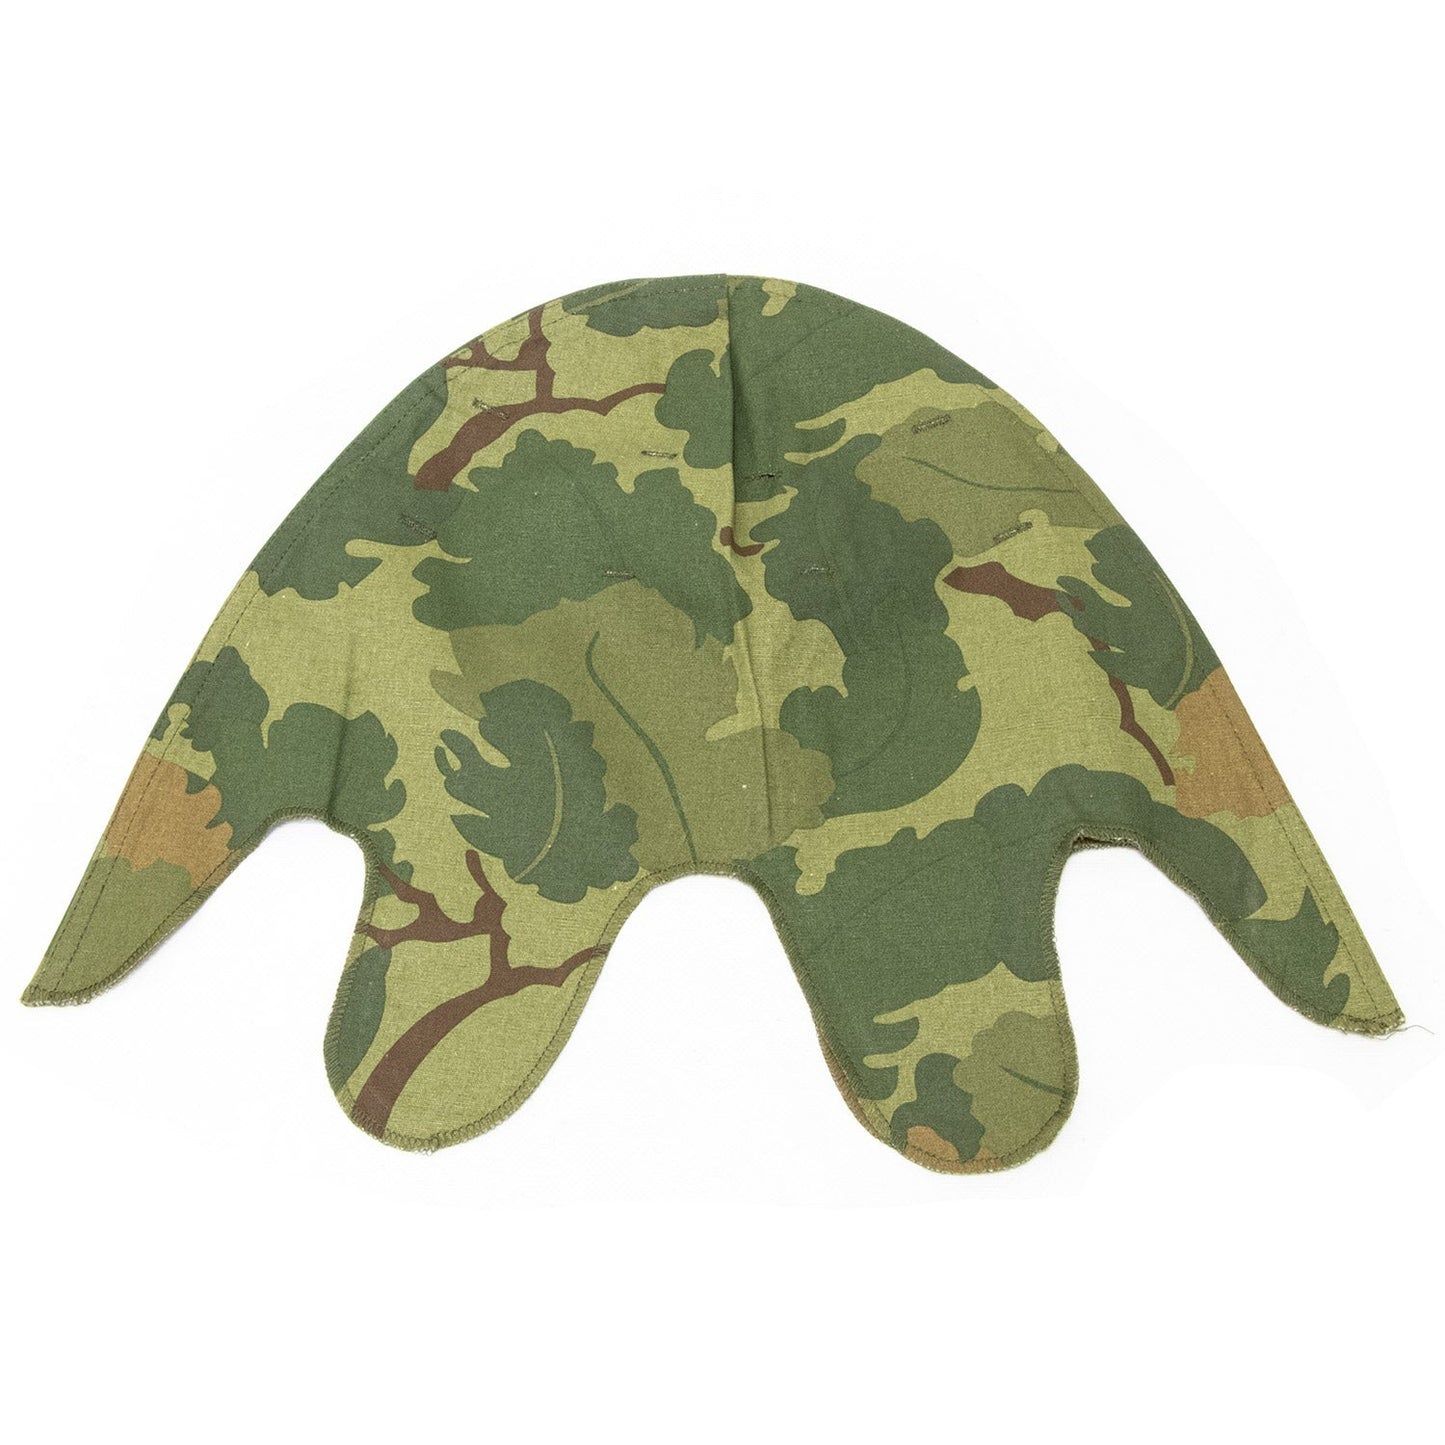 Reproduction couvre casque US Vietnam réversible Mitchell côté vert